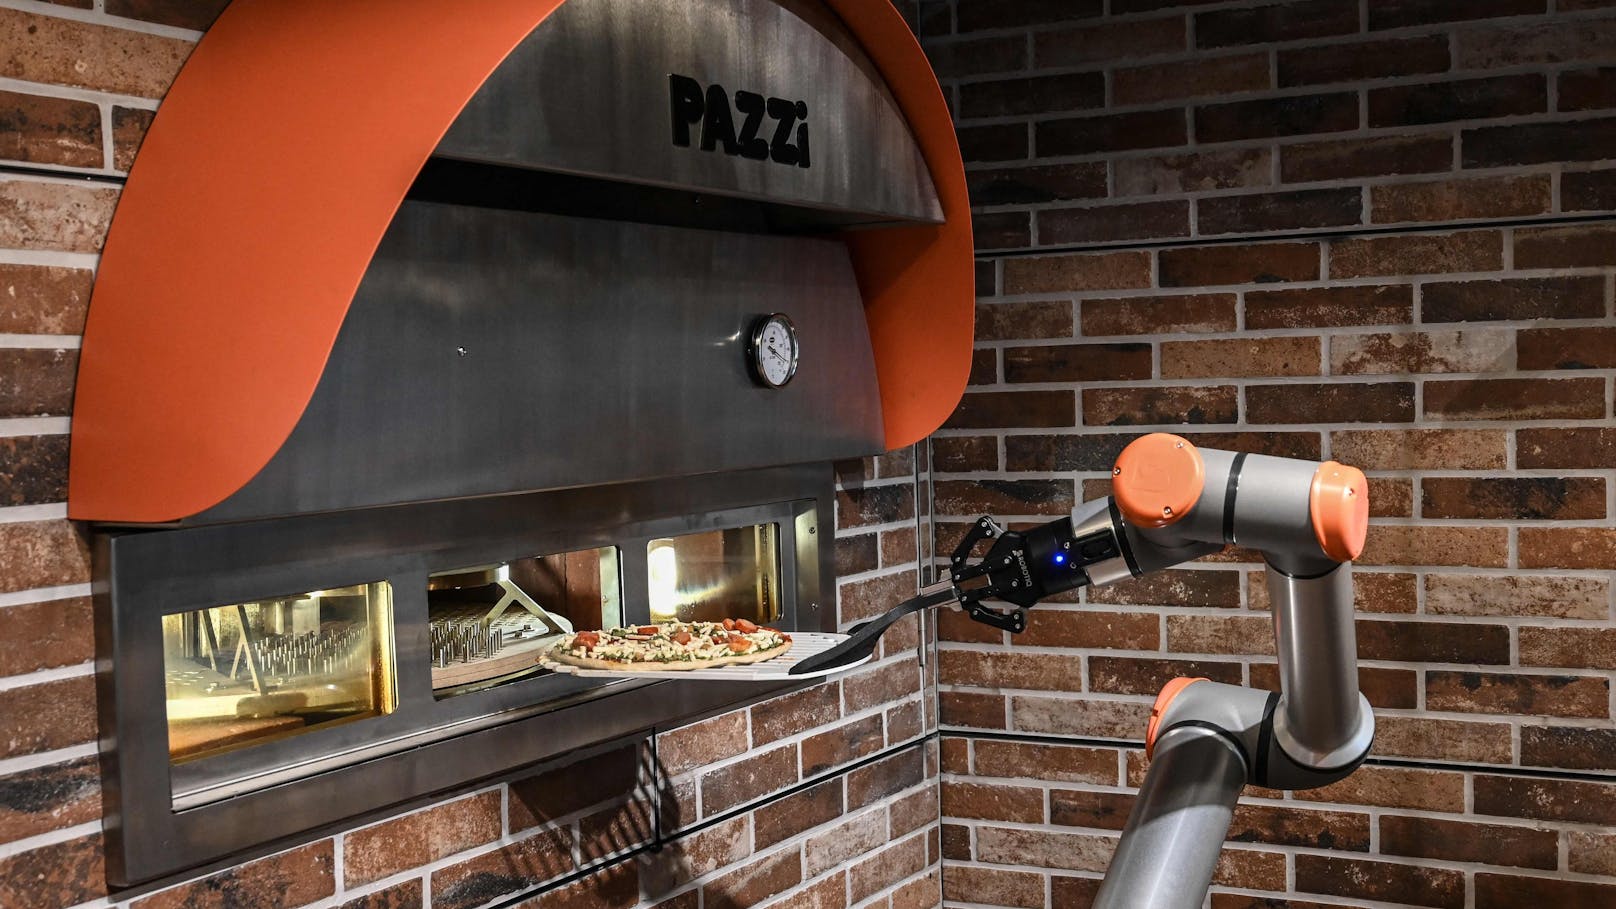 Pizzabäcker "Pazzi" in einem Pariser Restaurant.